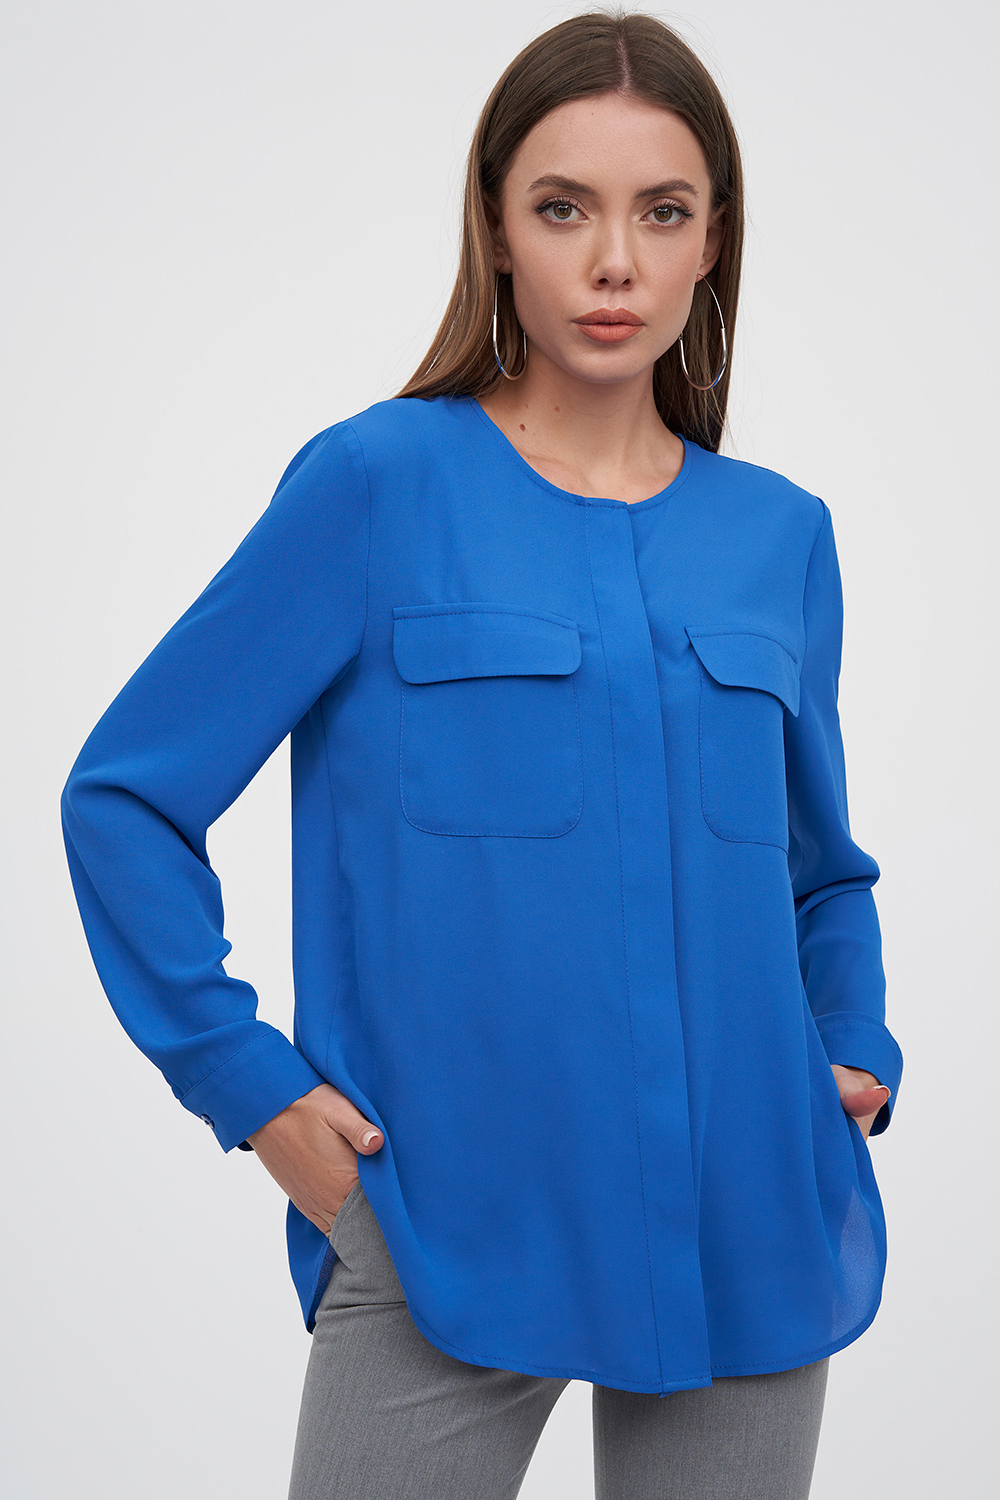 Шифоновая блуза синего цвета